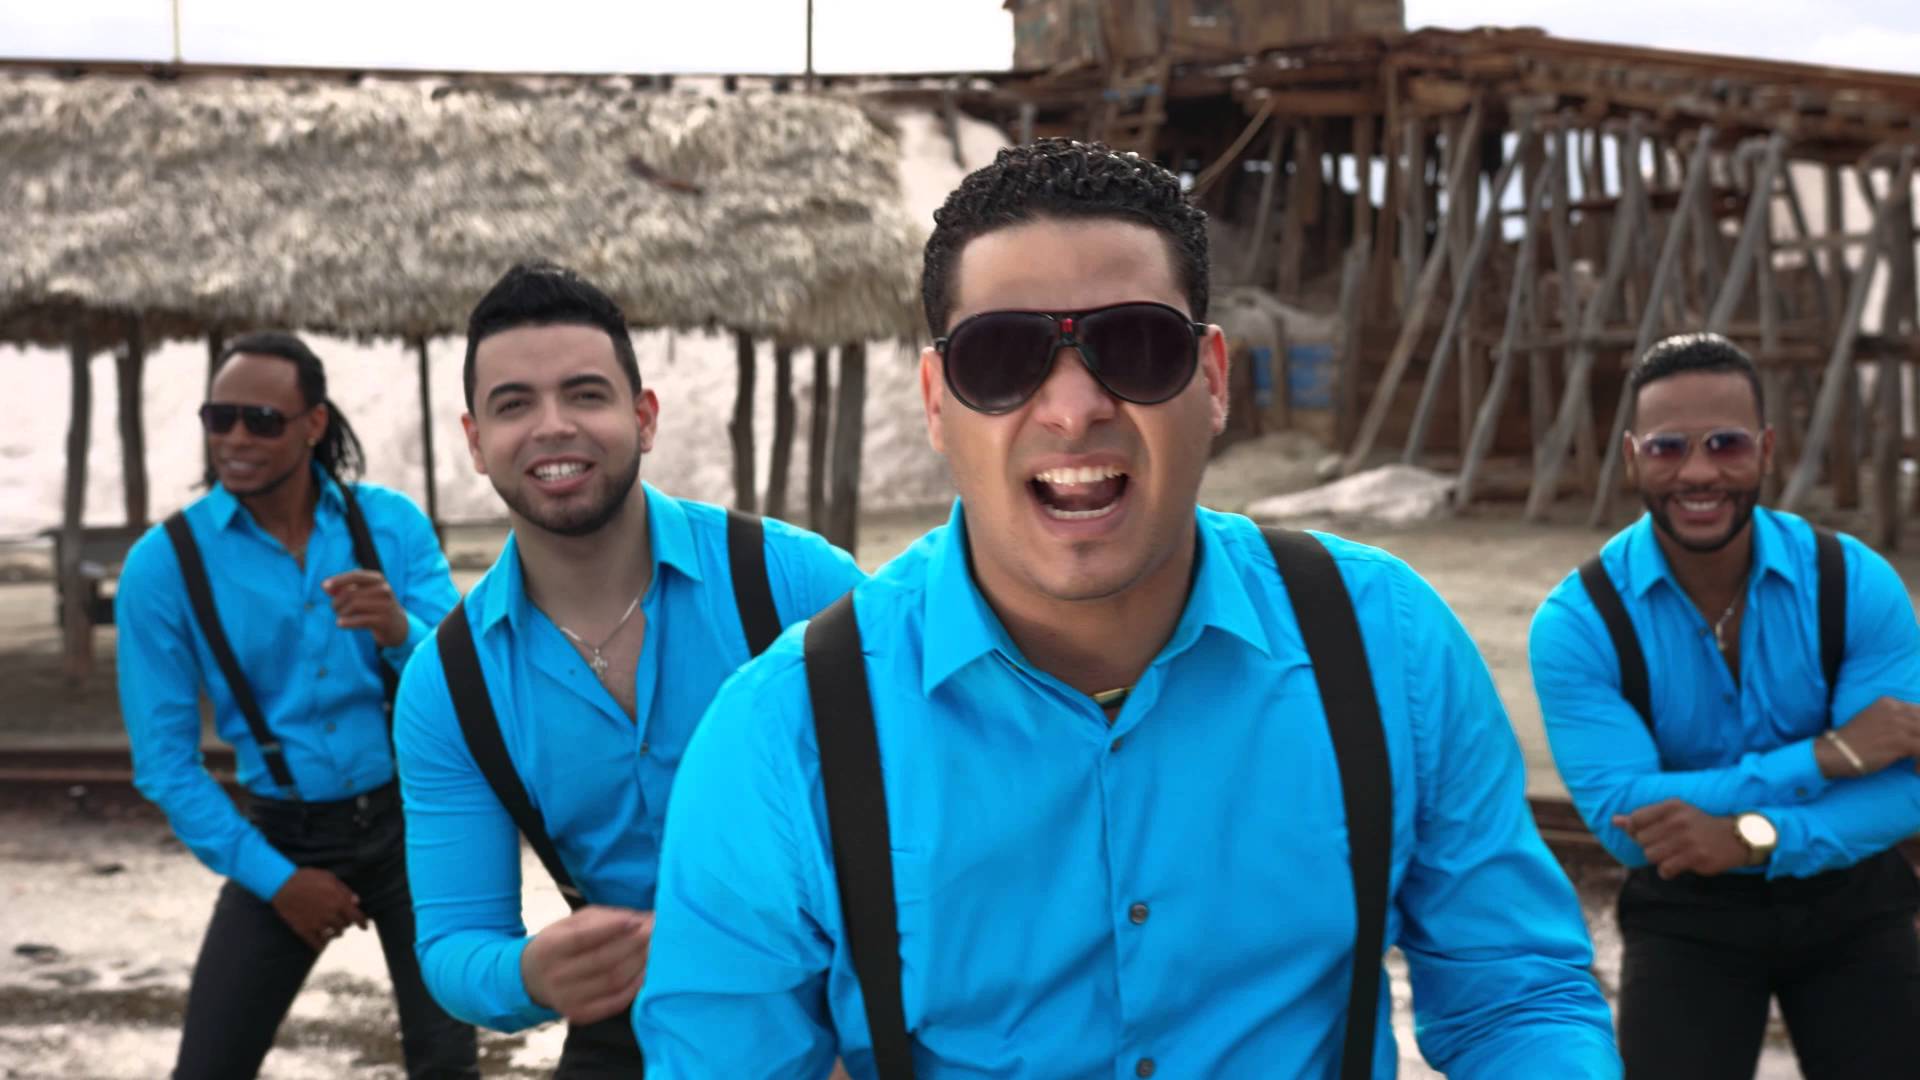 Chiquito Team Band, “más que emocionados” por nominación a Billboard latinos